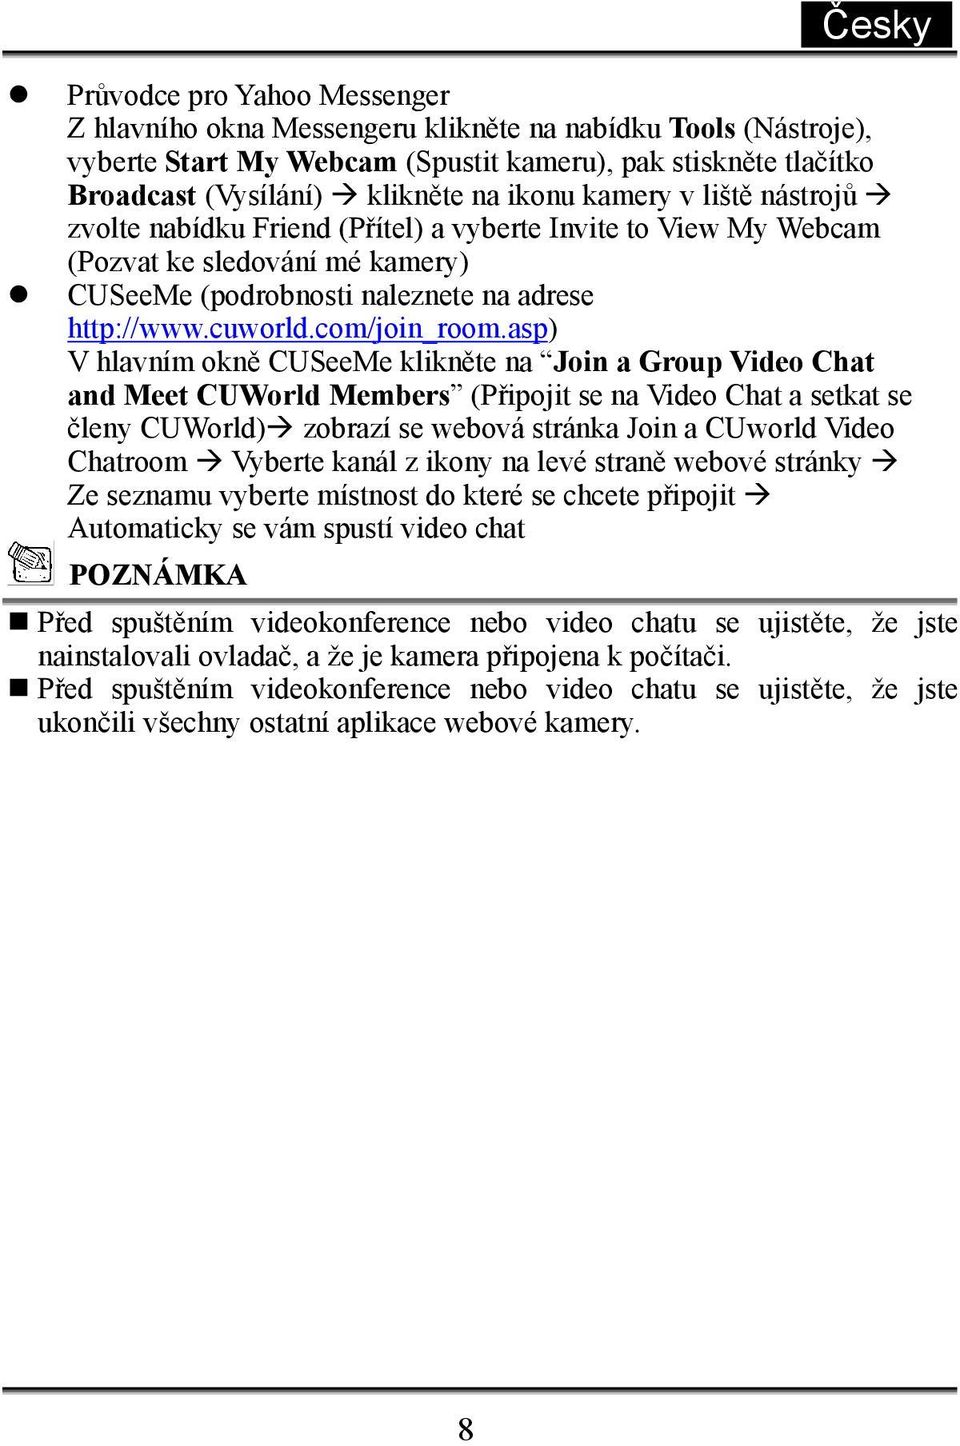 asp) V hlavním okně CUSeeMe klikněte na Join a Group Video Chat and Meet CUWorld Members (Připojit se na Video Chat a setkat se členy CUWorld) zobrazí se webová stránka Join a CUworld Video Chatroom